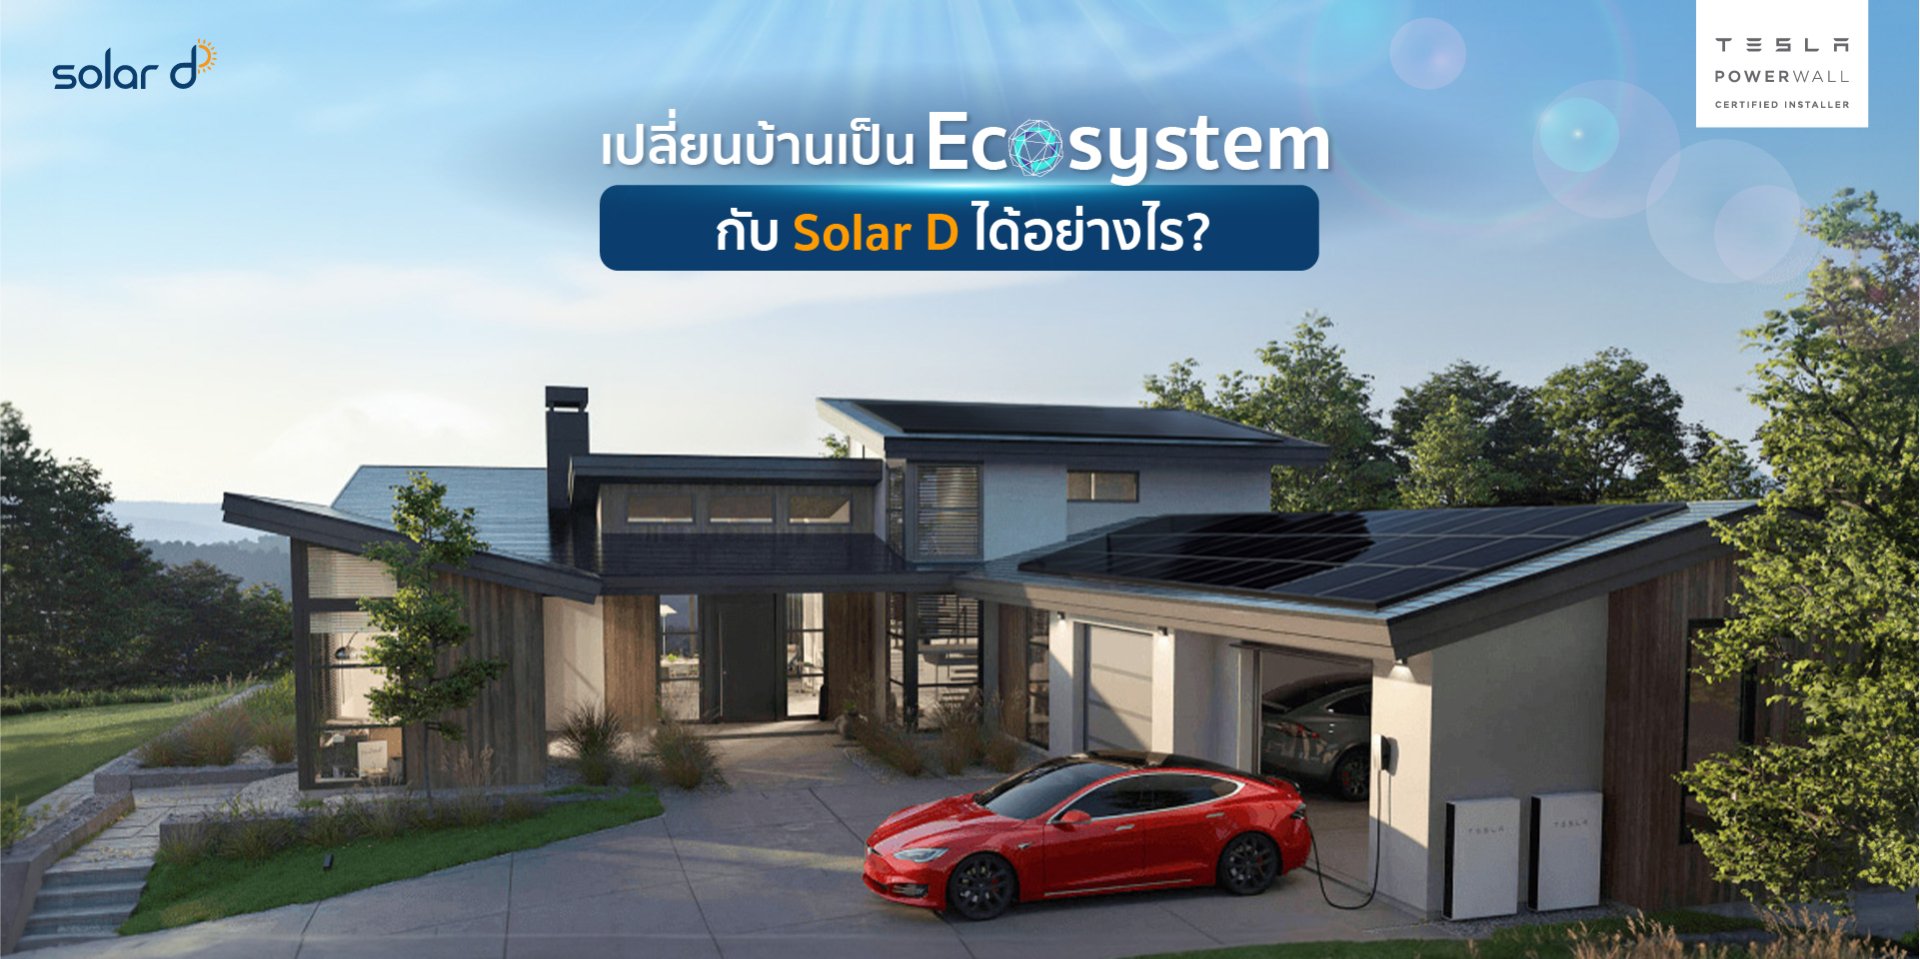 เปลี่ยนบ้านเป็น Ecosystem กับ Solar D ได้อย่างไร?